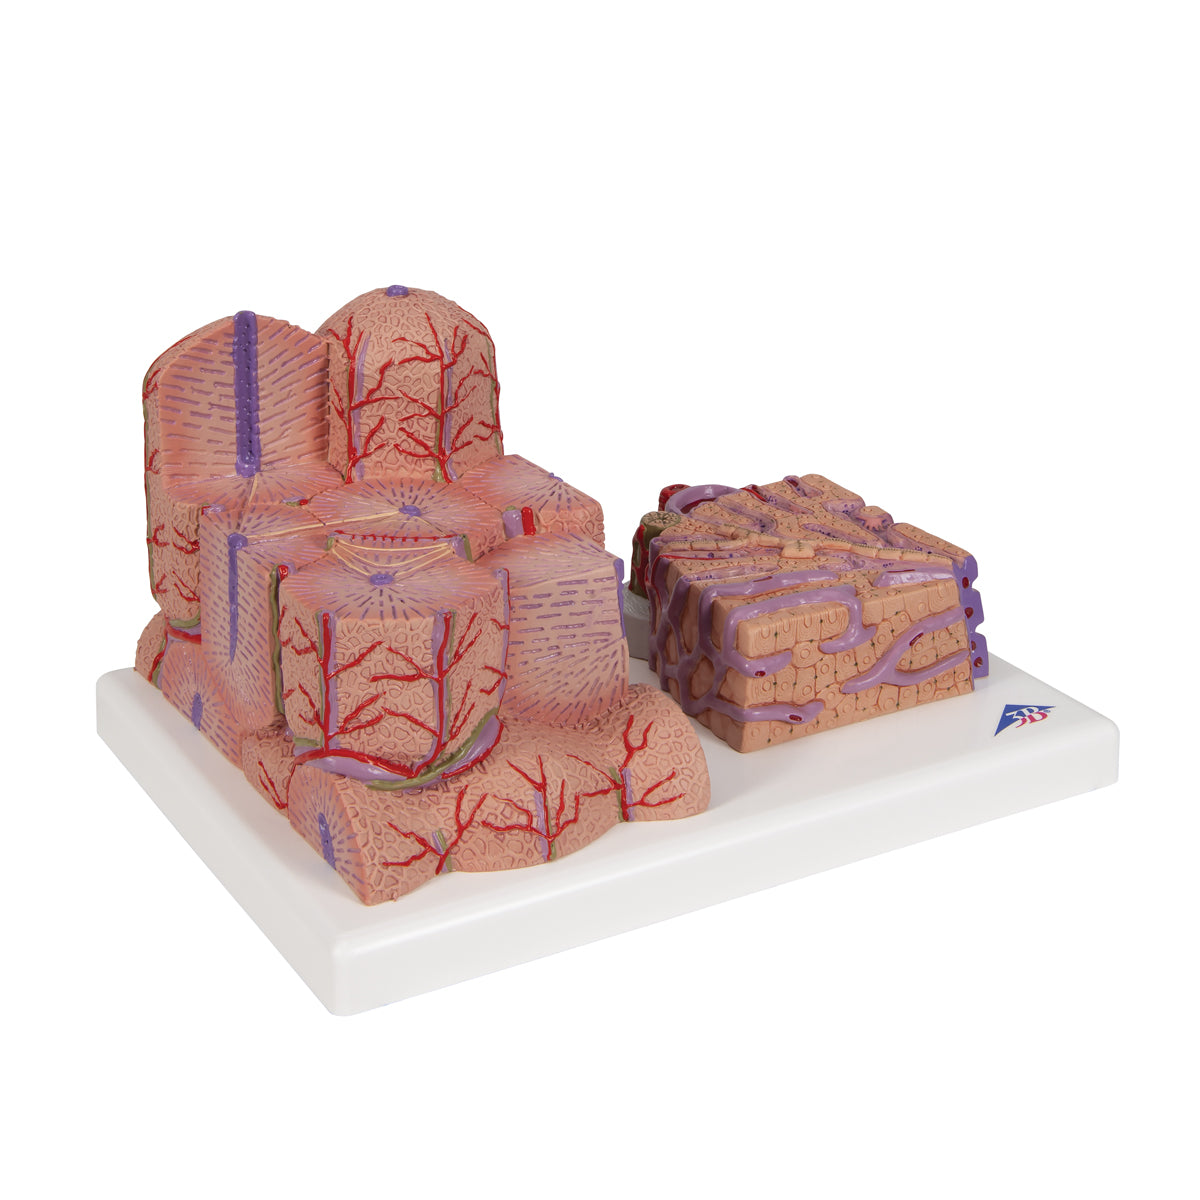 Detaljeret model af leverens væv og blodkar i et mikroskopisk perspektiv